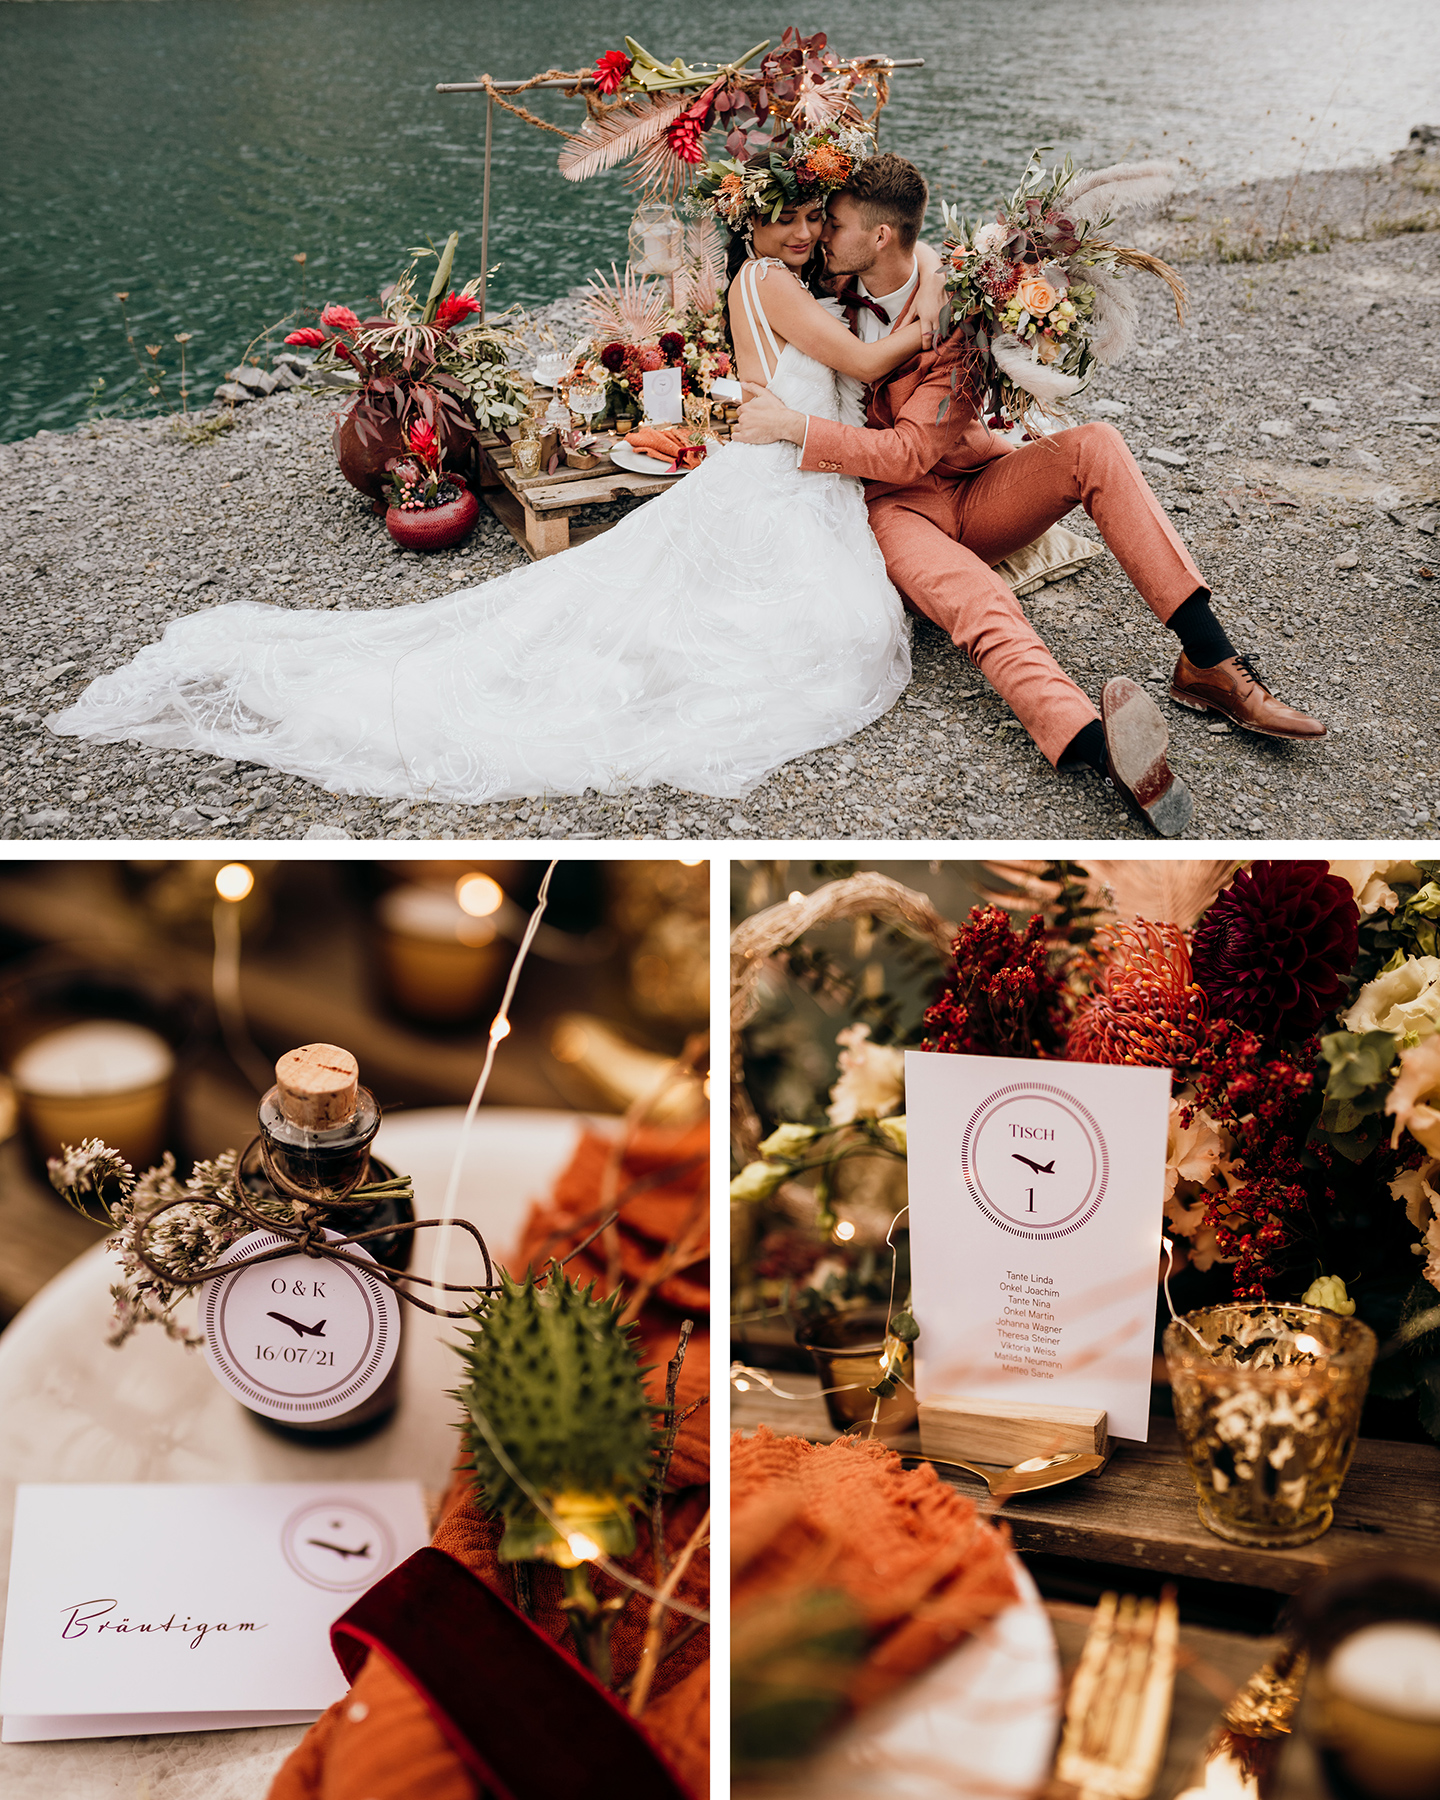 Eine Hochzeitstafel am See ist dekoriert mit orangen Blumen und Papeterie mit Flugzeug-Illustrationen.